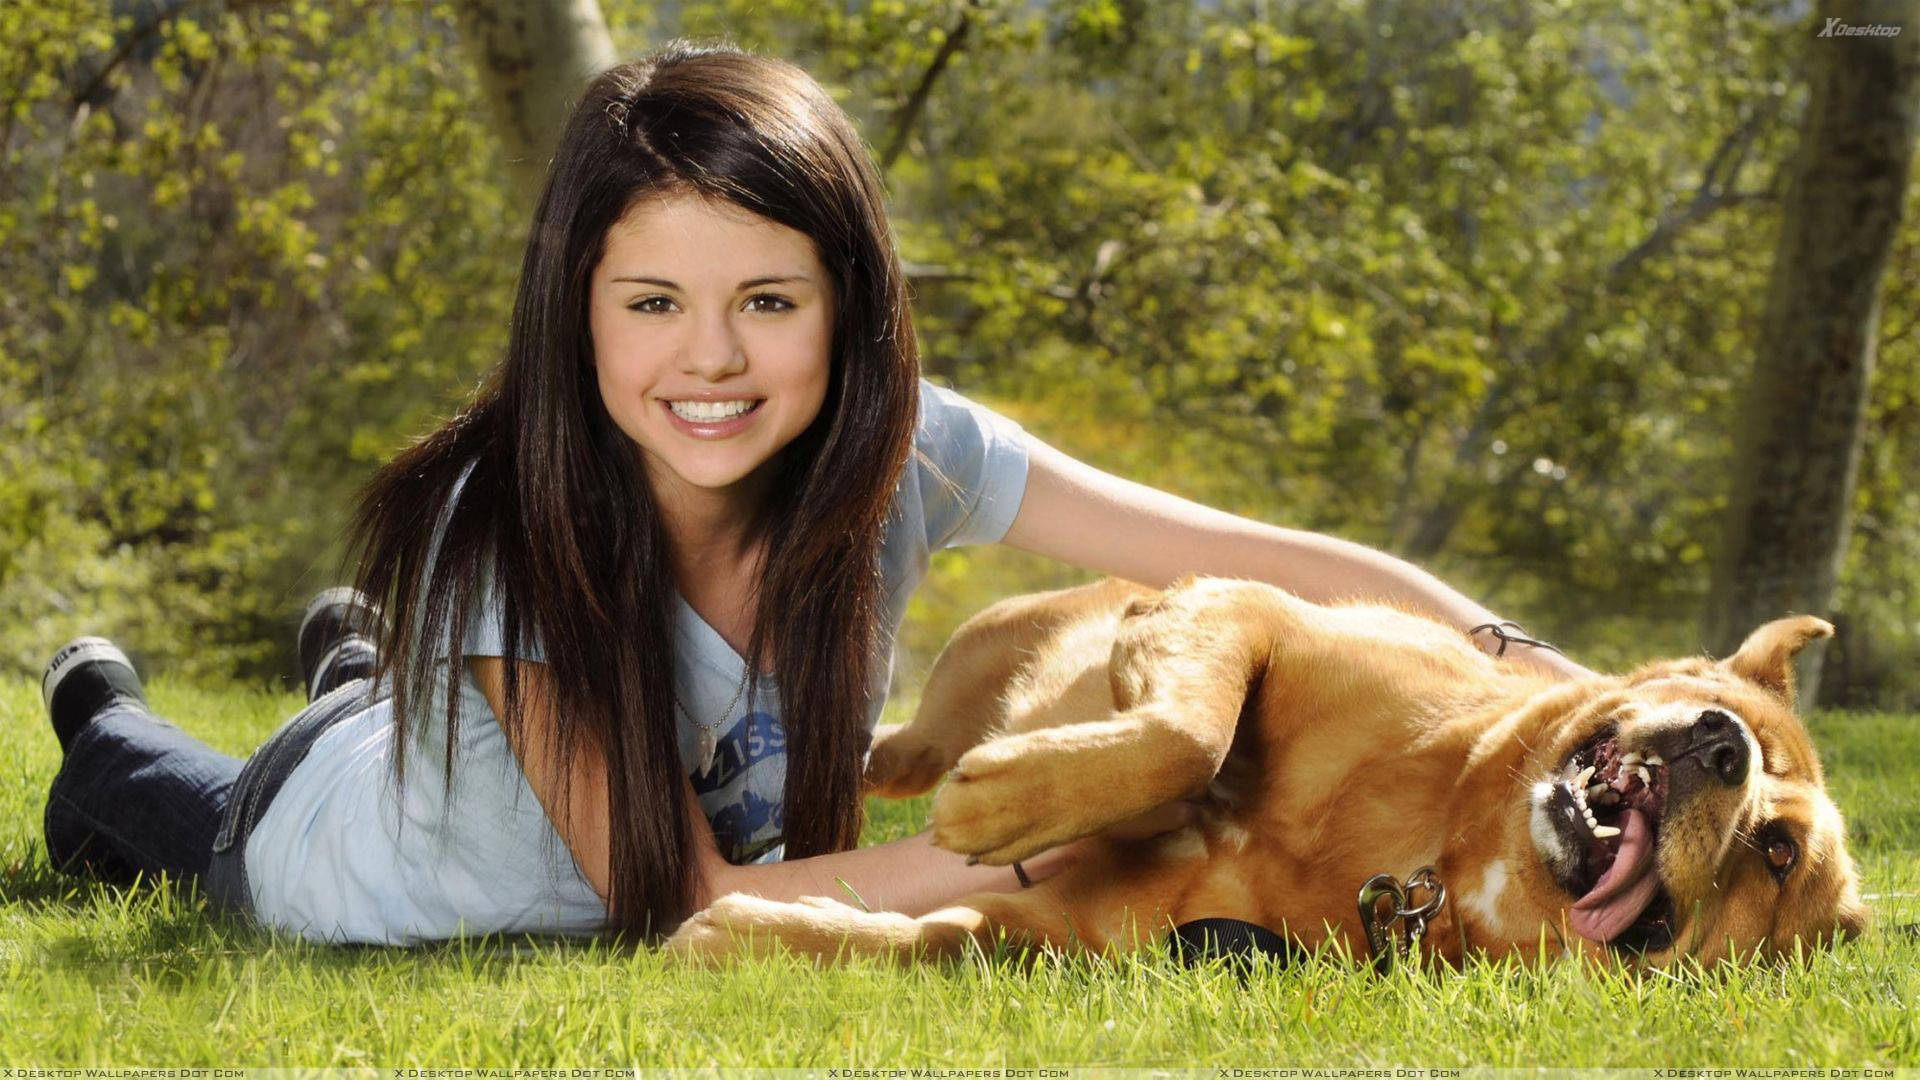 Hundund Mädchen Selena Gomez Wallpaper